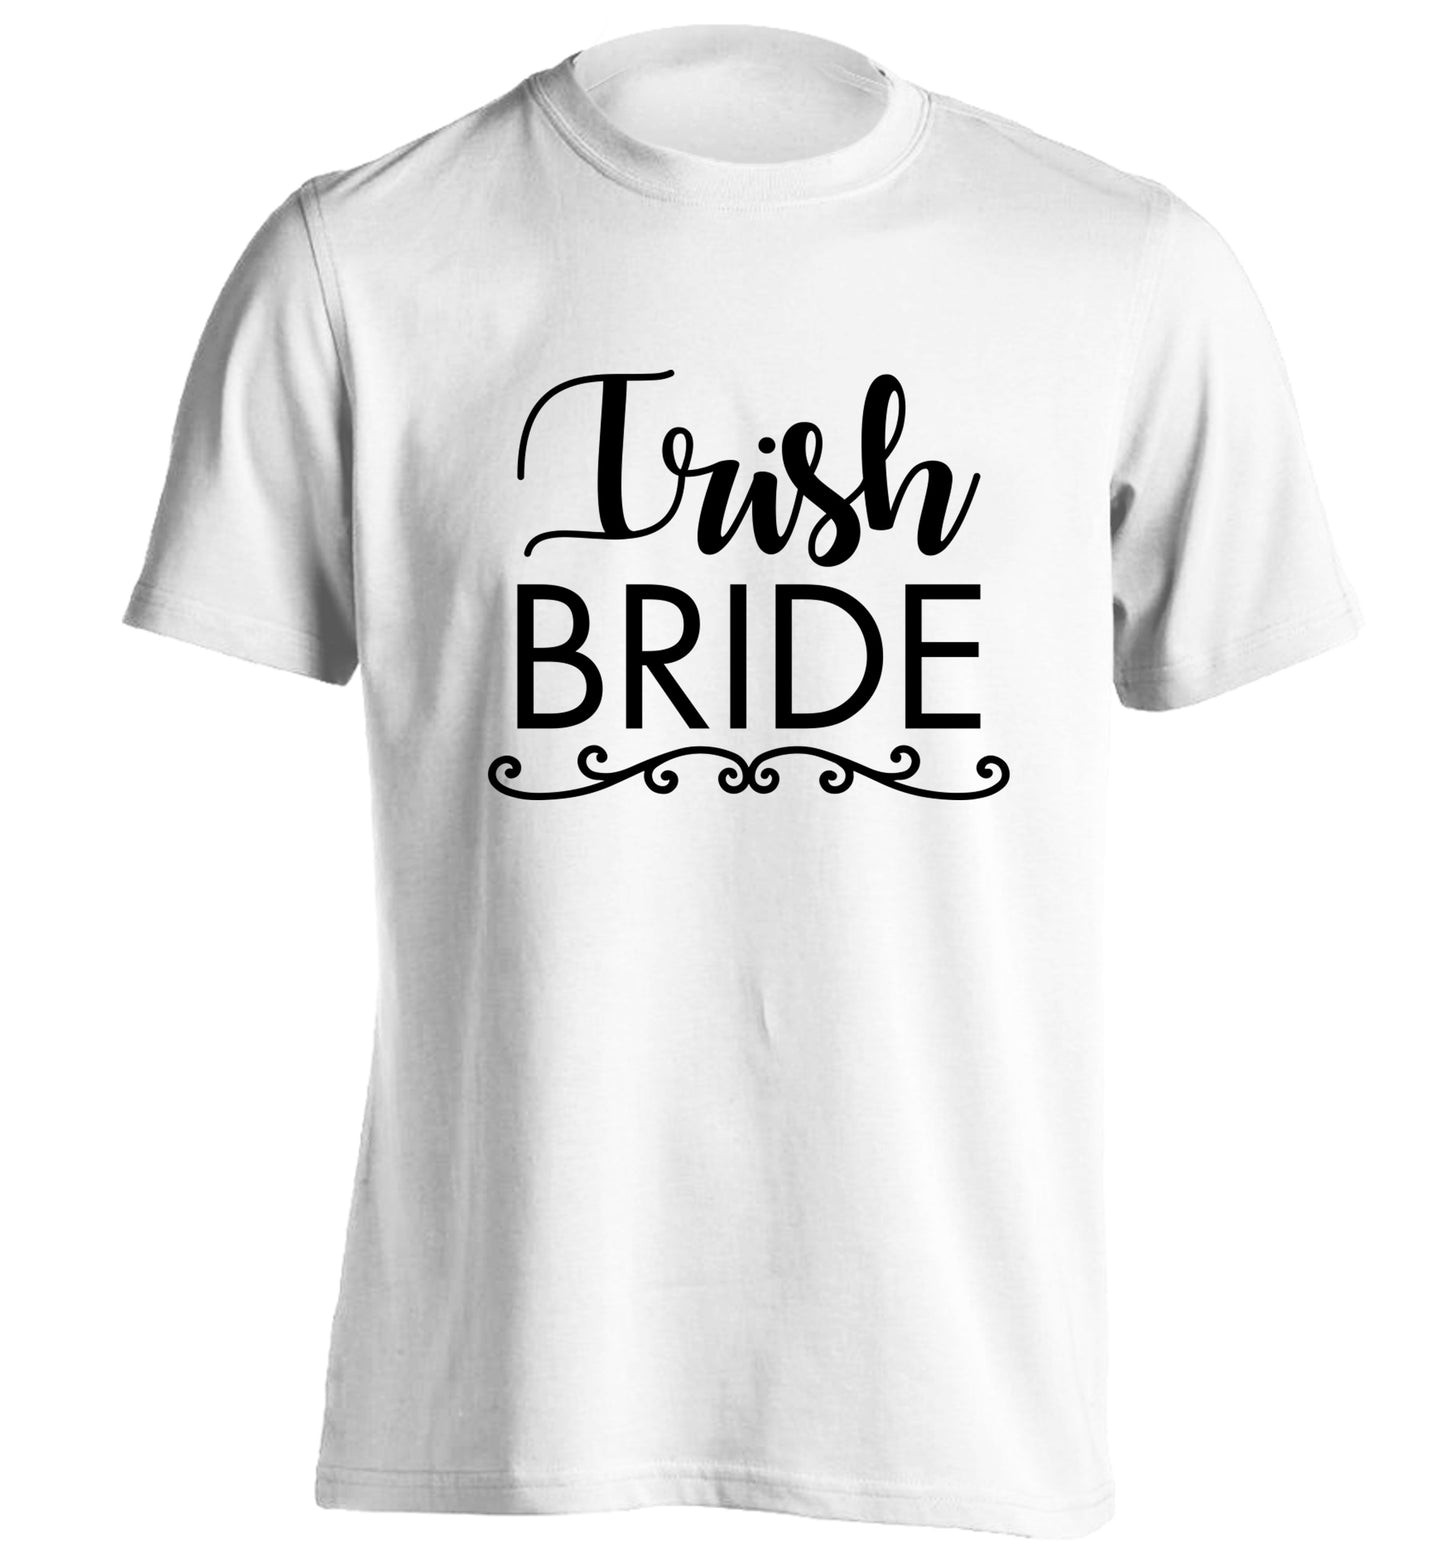 Irish bride adults unisex white Tshirt 2XL